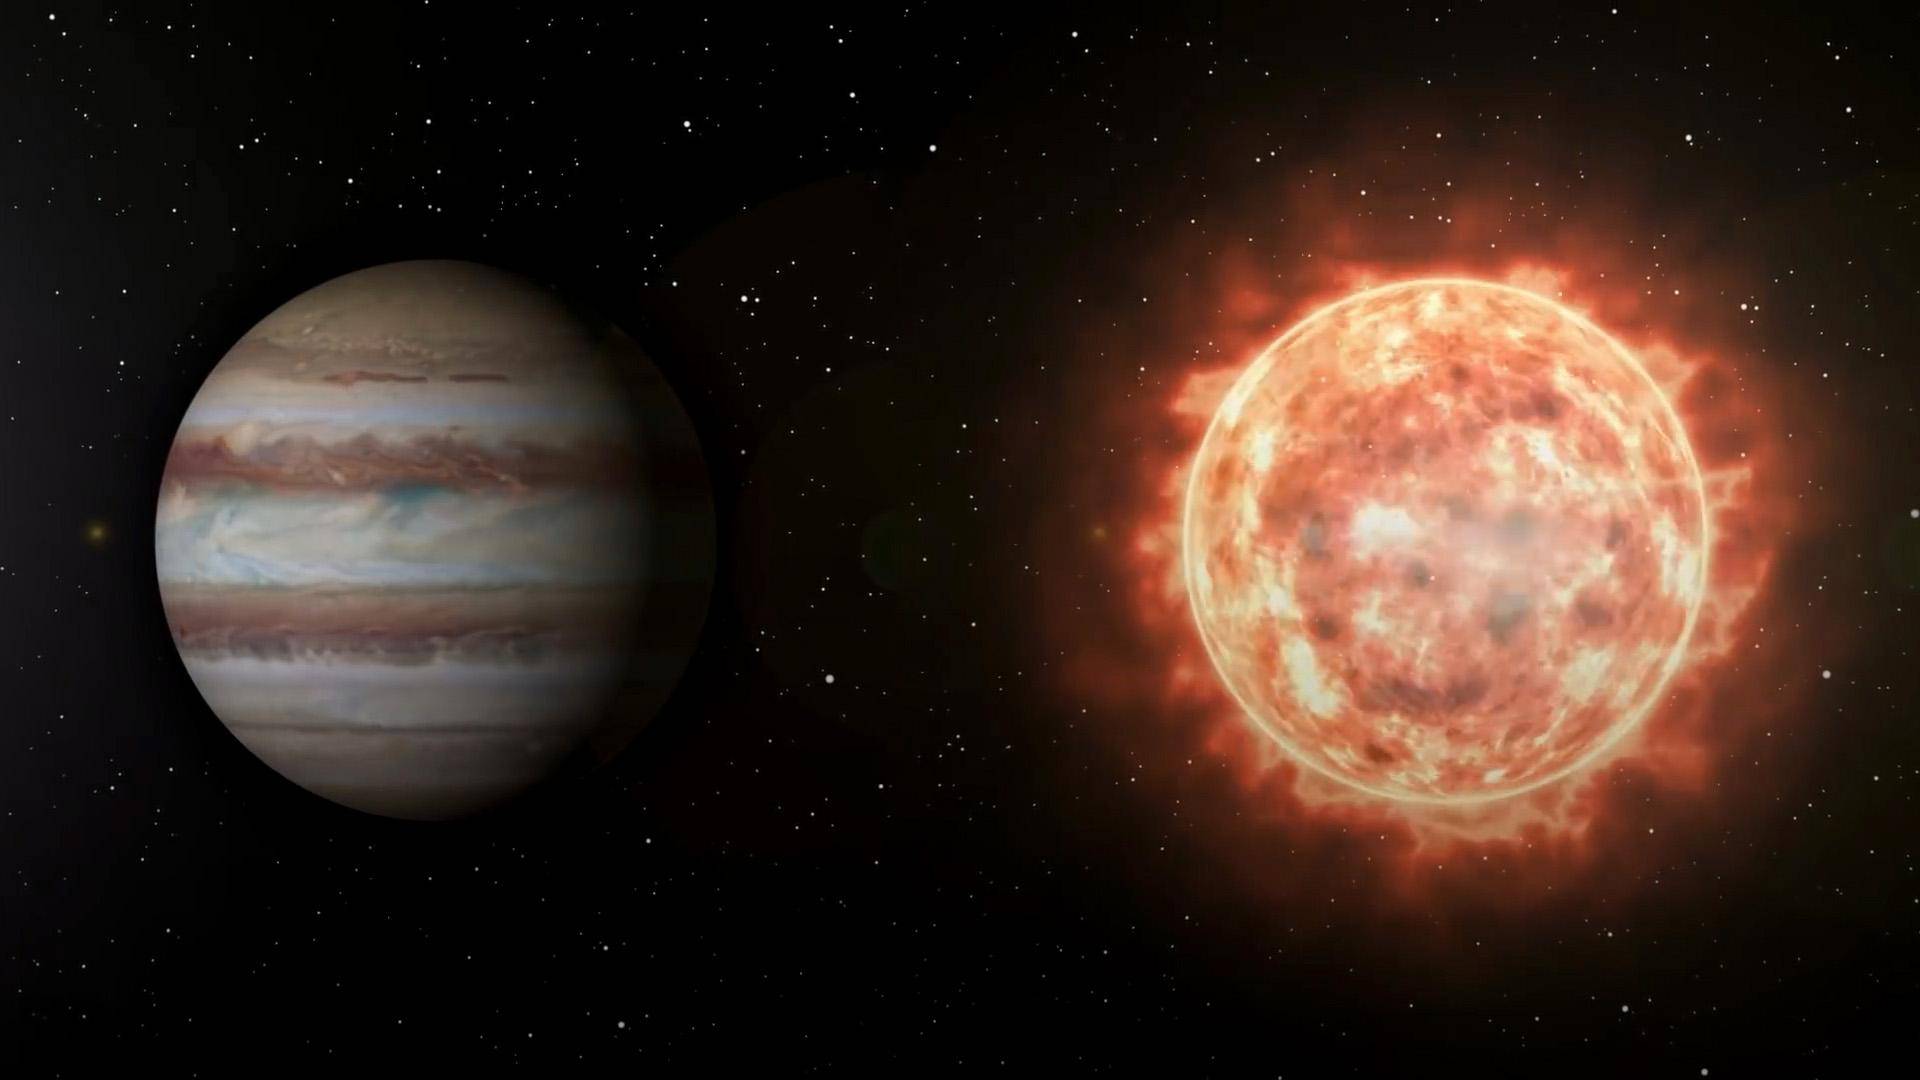 都不足以点燃整个星球,更不可能持续进行氢元素核聚变,因此木星未来大